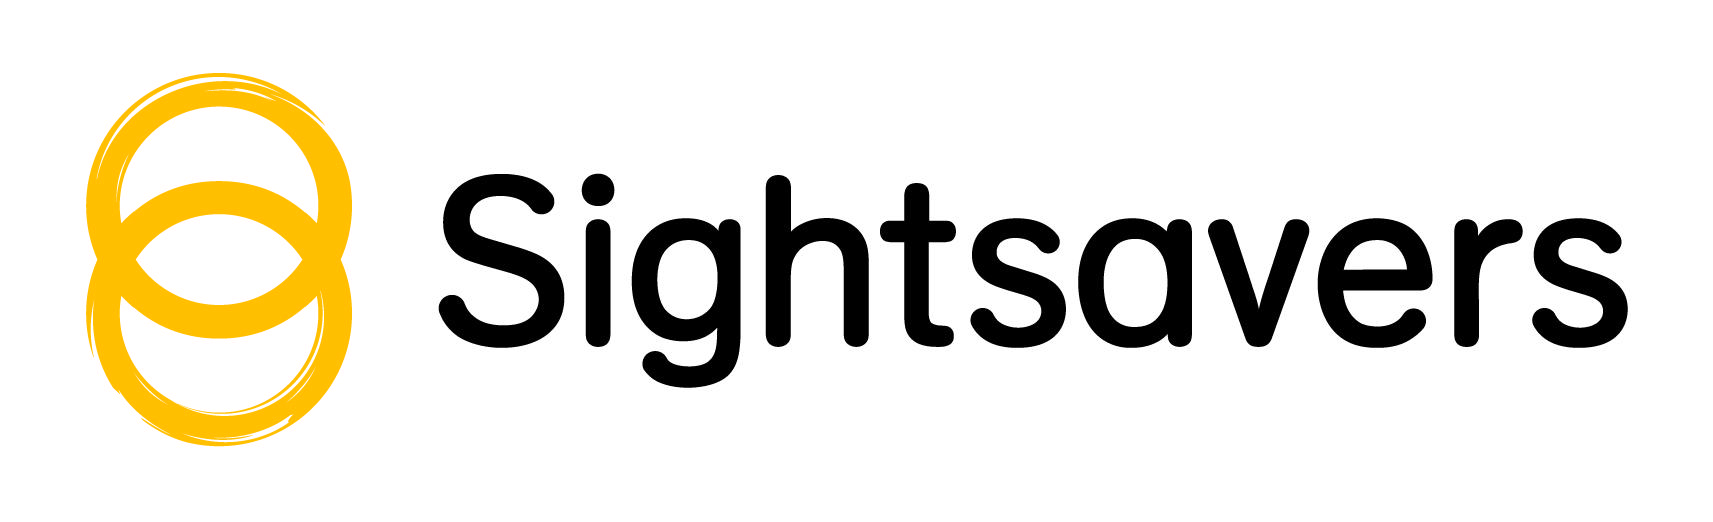 Sightsavers with organizational logo